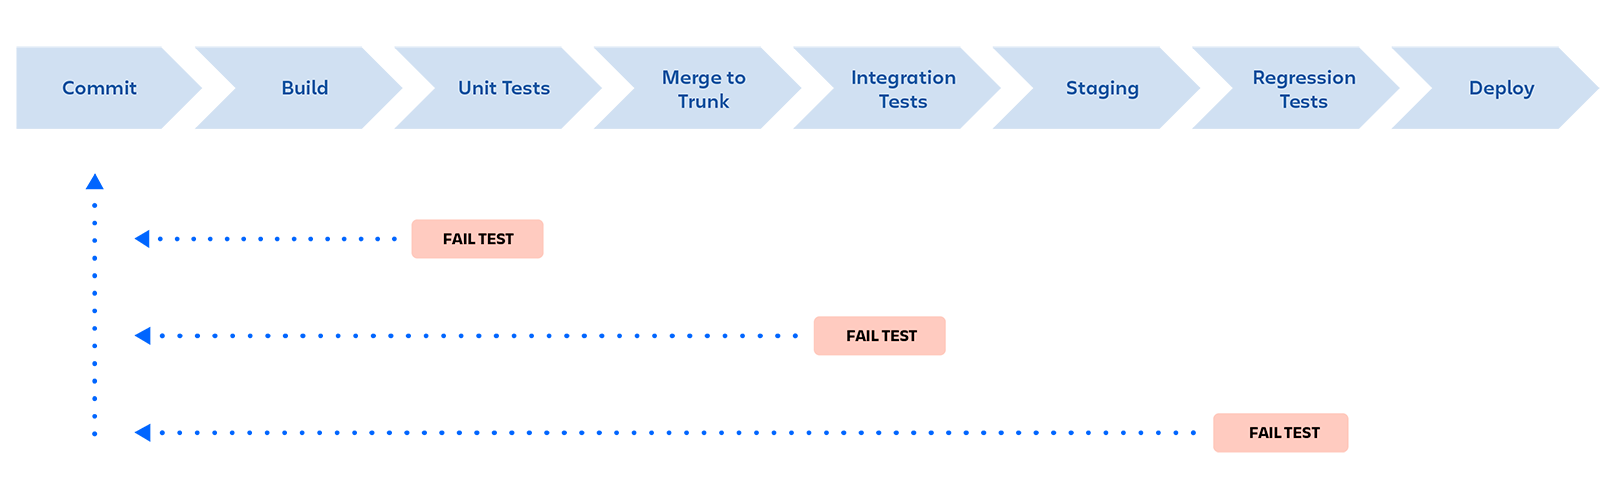 DevOps 파이프라인: 커밋, 빌드, 단위 테스트, 트렁크에 병합, 통합 테스트, 스테이징, 회귀 테스트, 배포 어느 단계에서든 테스트가 실패하면 파이프라인이 중지되고 개발자에게 피드백을 제공합니다.